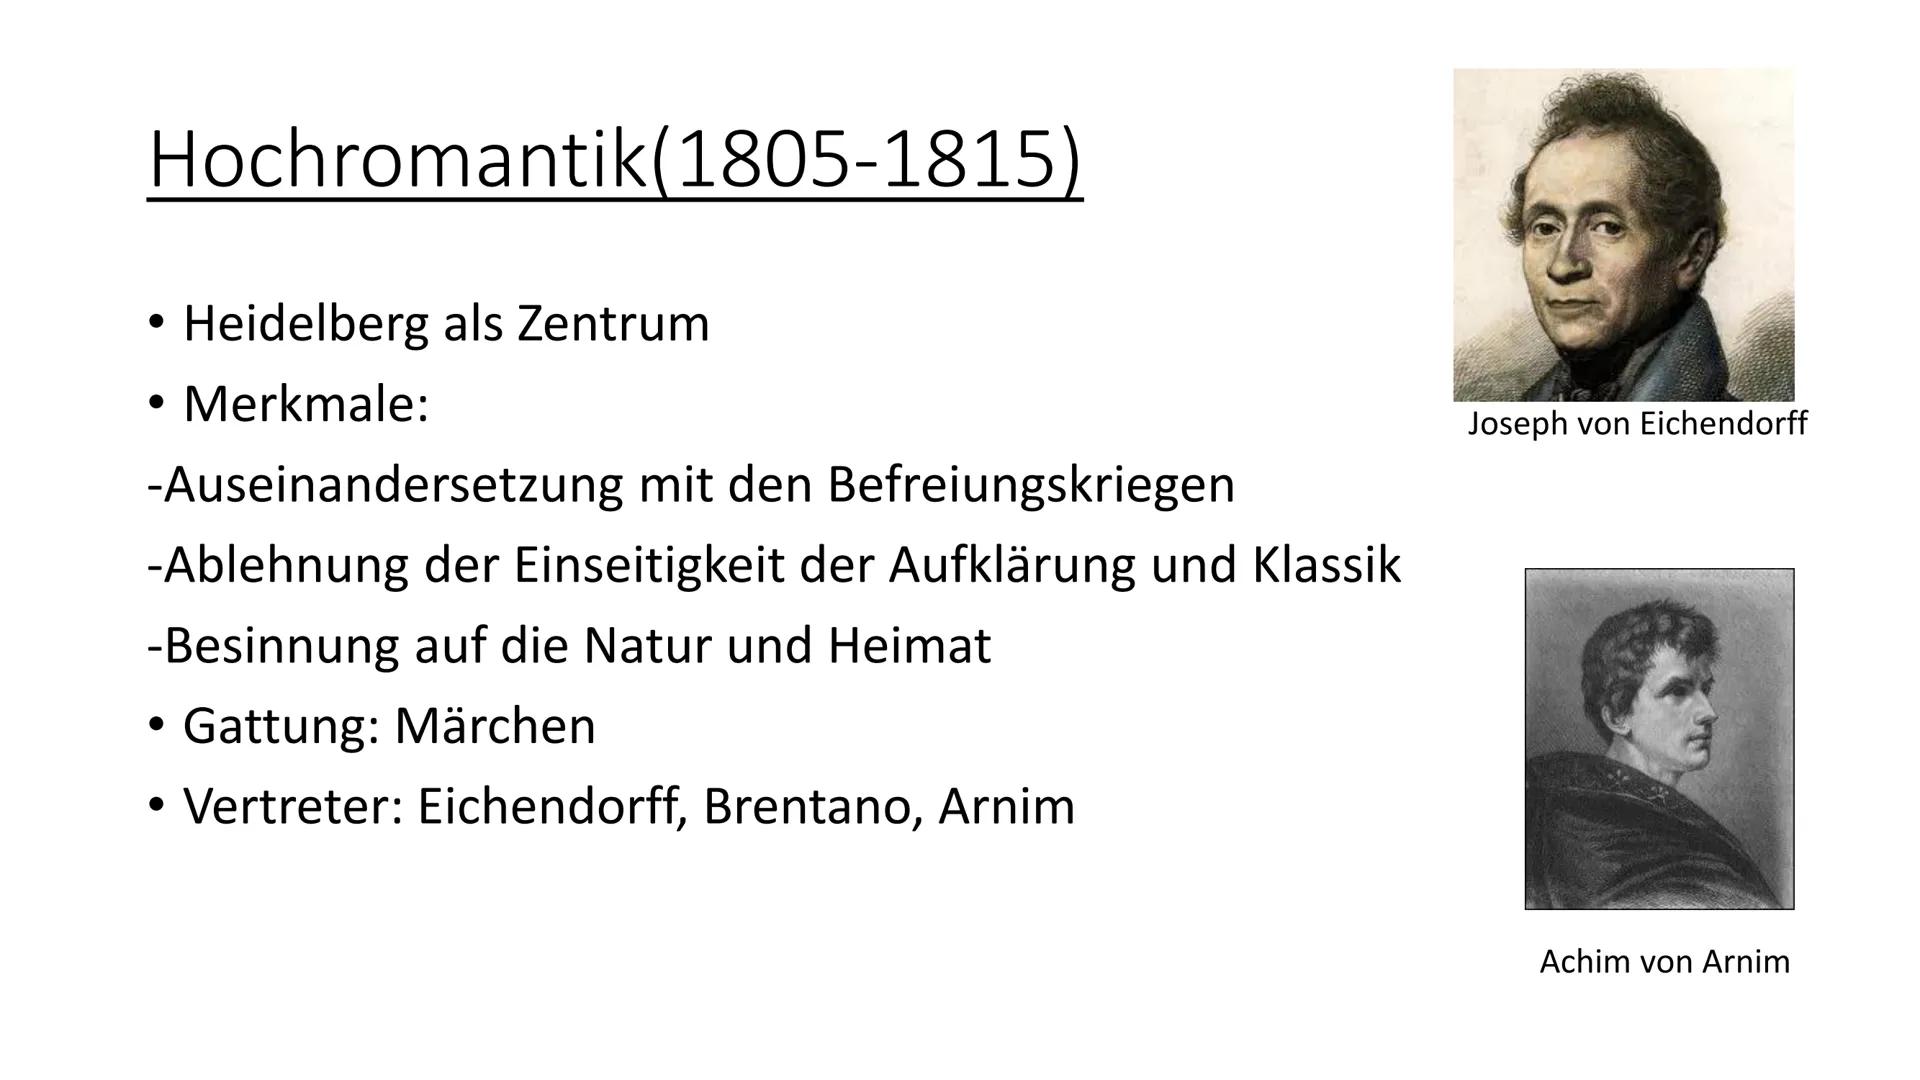 
<h2 id="einordnungderepoche">Einordnung der Epoche</h2>
<p>Die Romantik war eine bedeutende Epoche in der deutschen Literaturgeschichte und